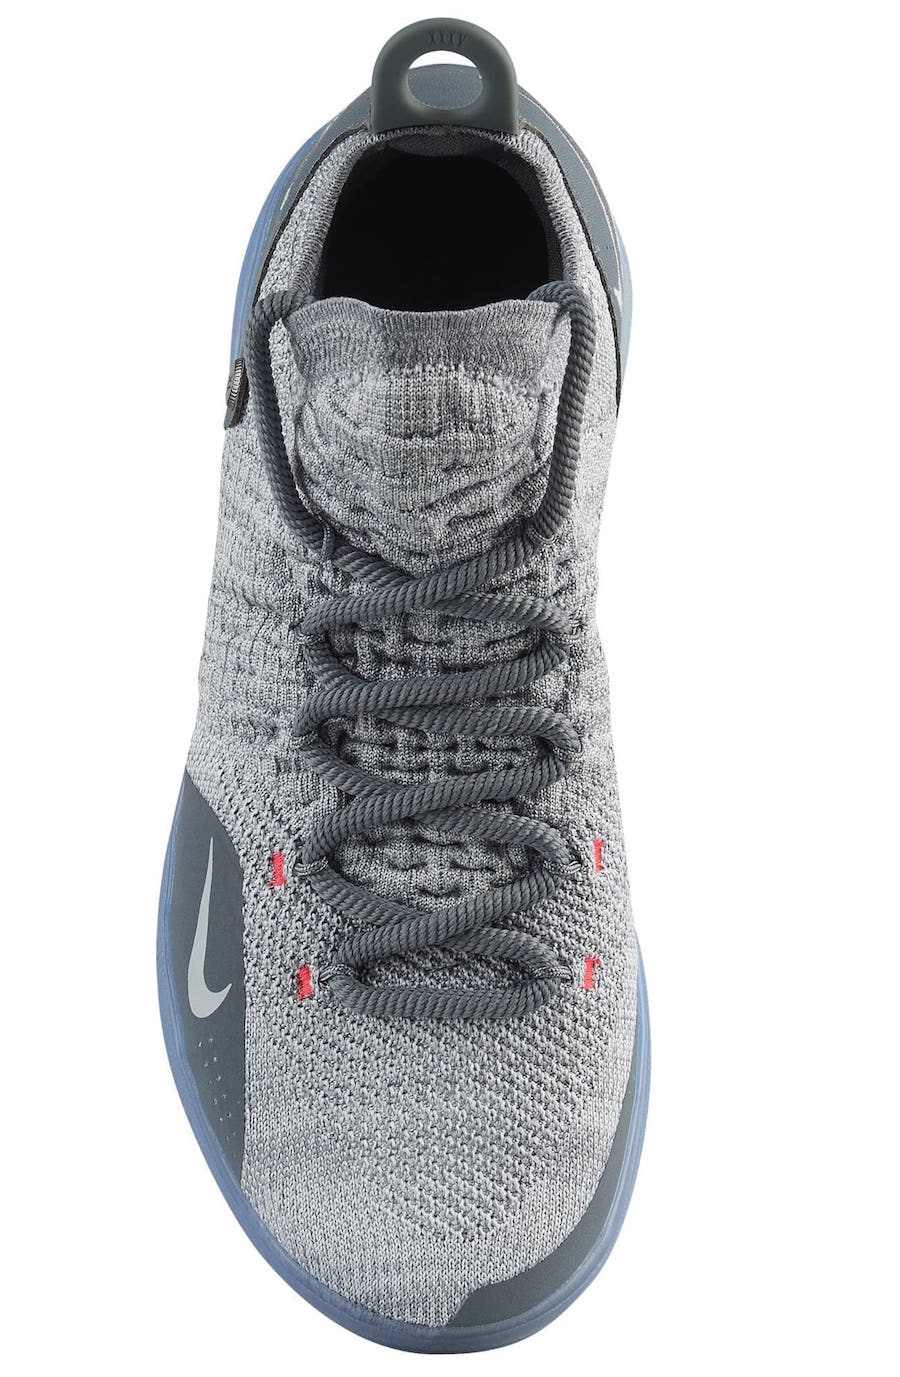 Nike KD 11 Cool Grey AO2604-002